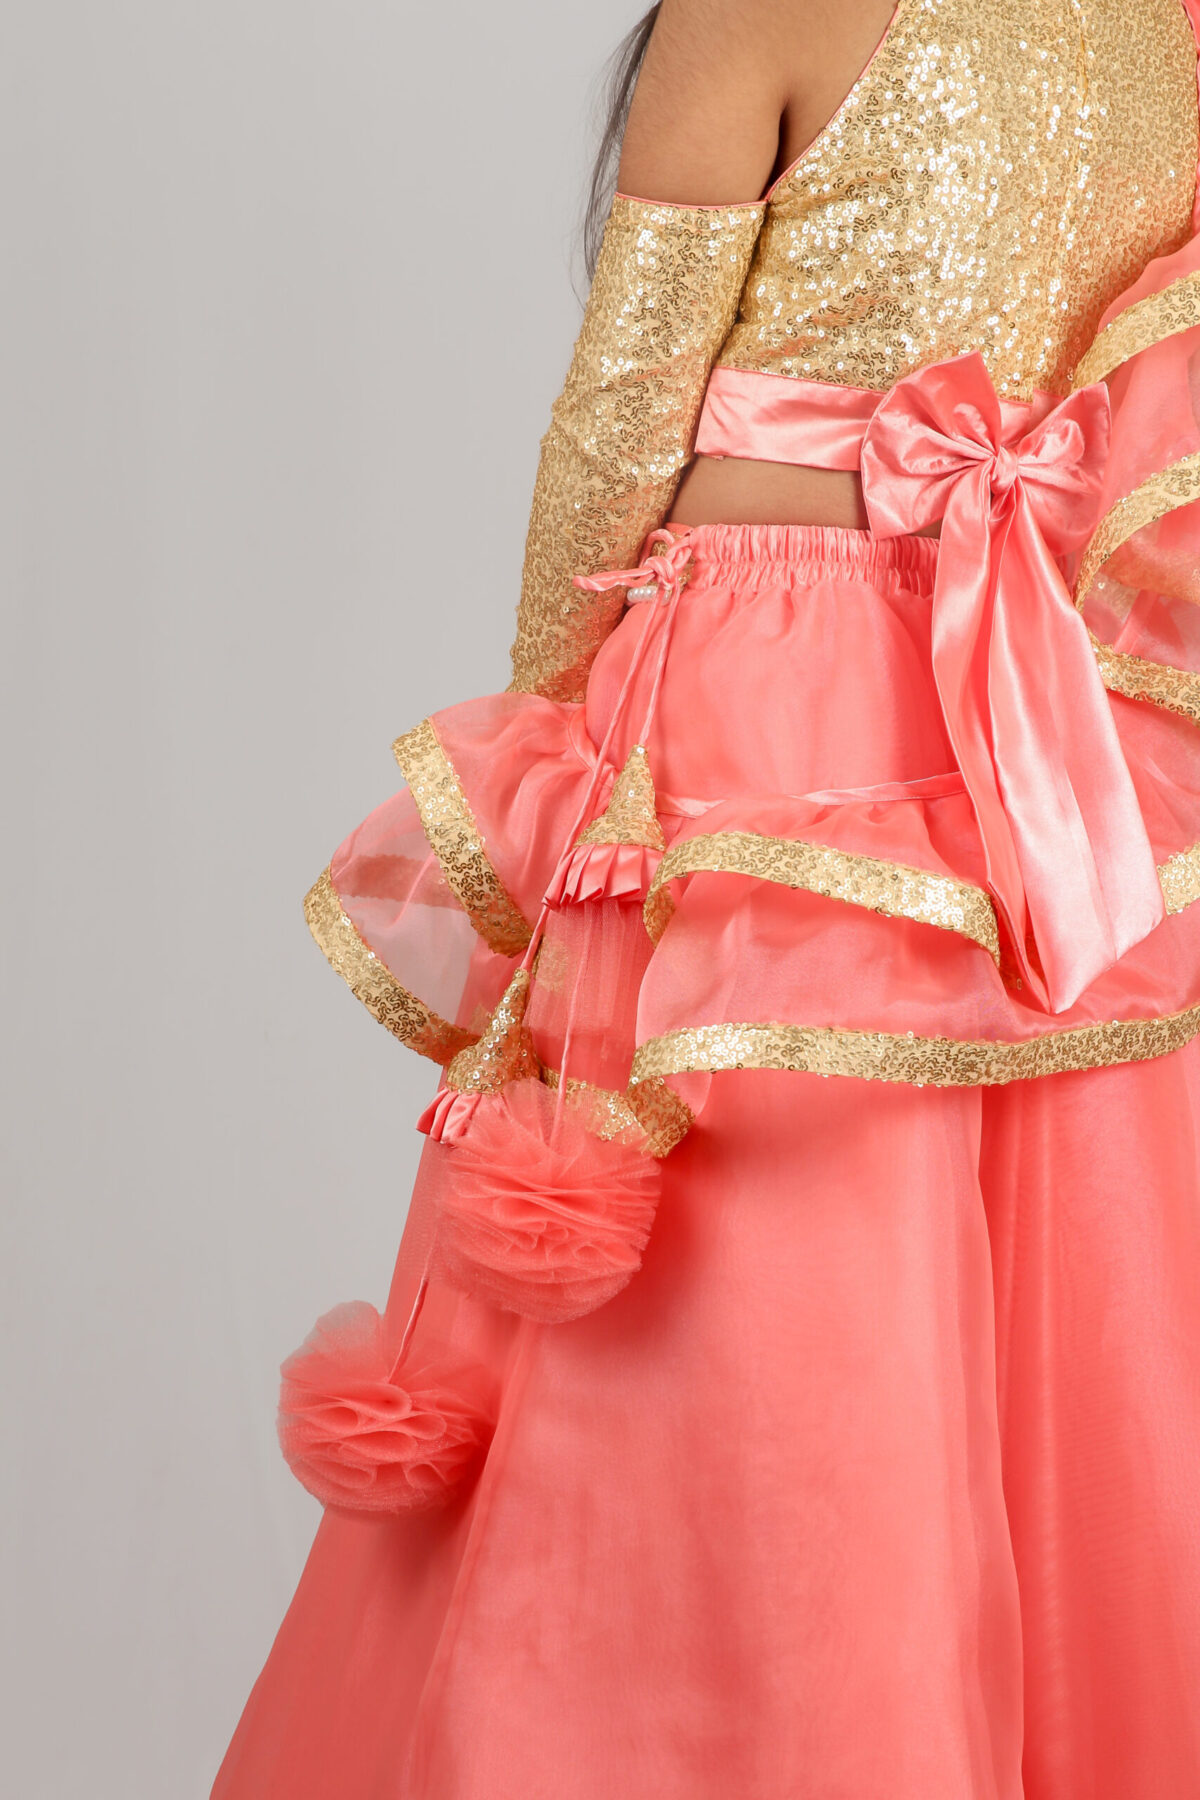 IMG 9979 2 scaled Blush Pink Princess style Lehenga Choli